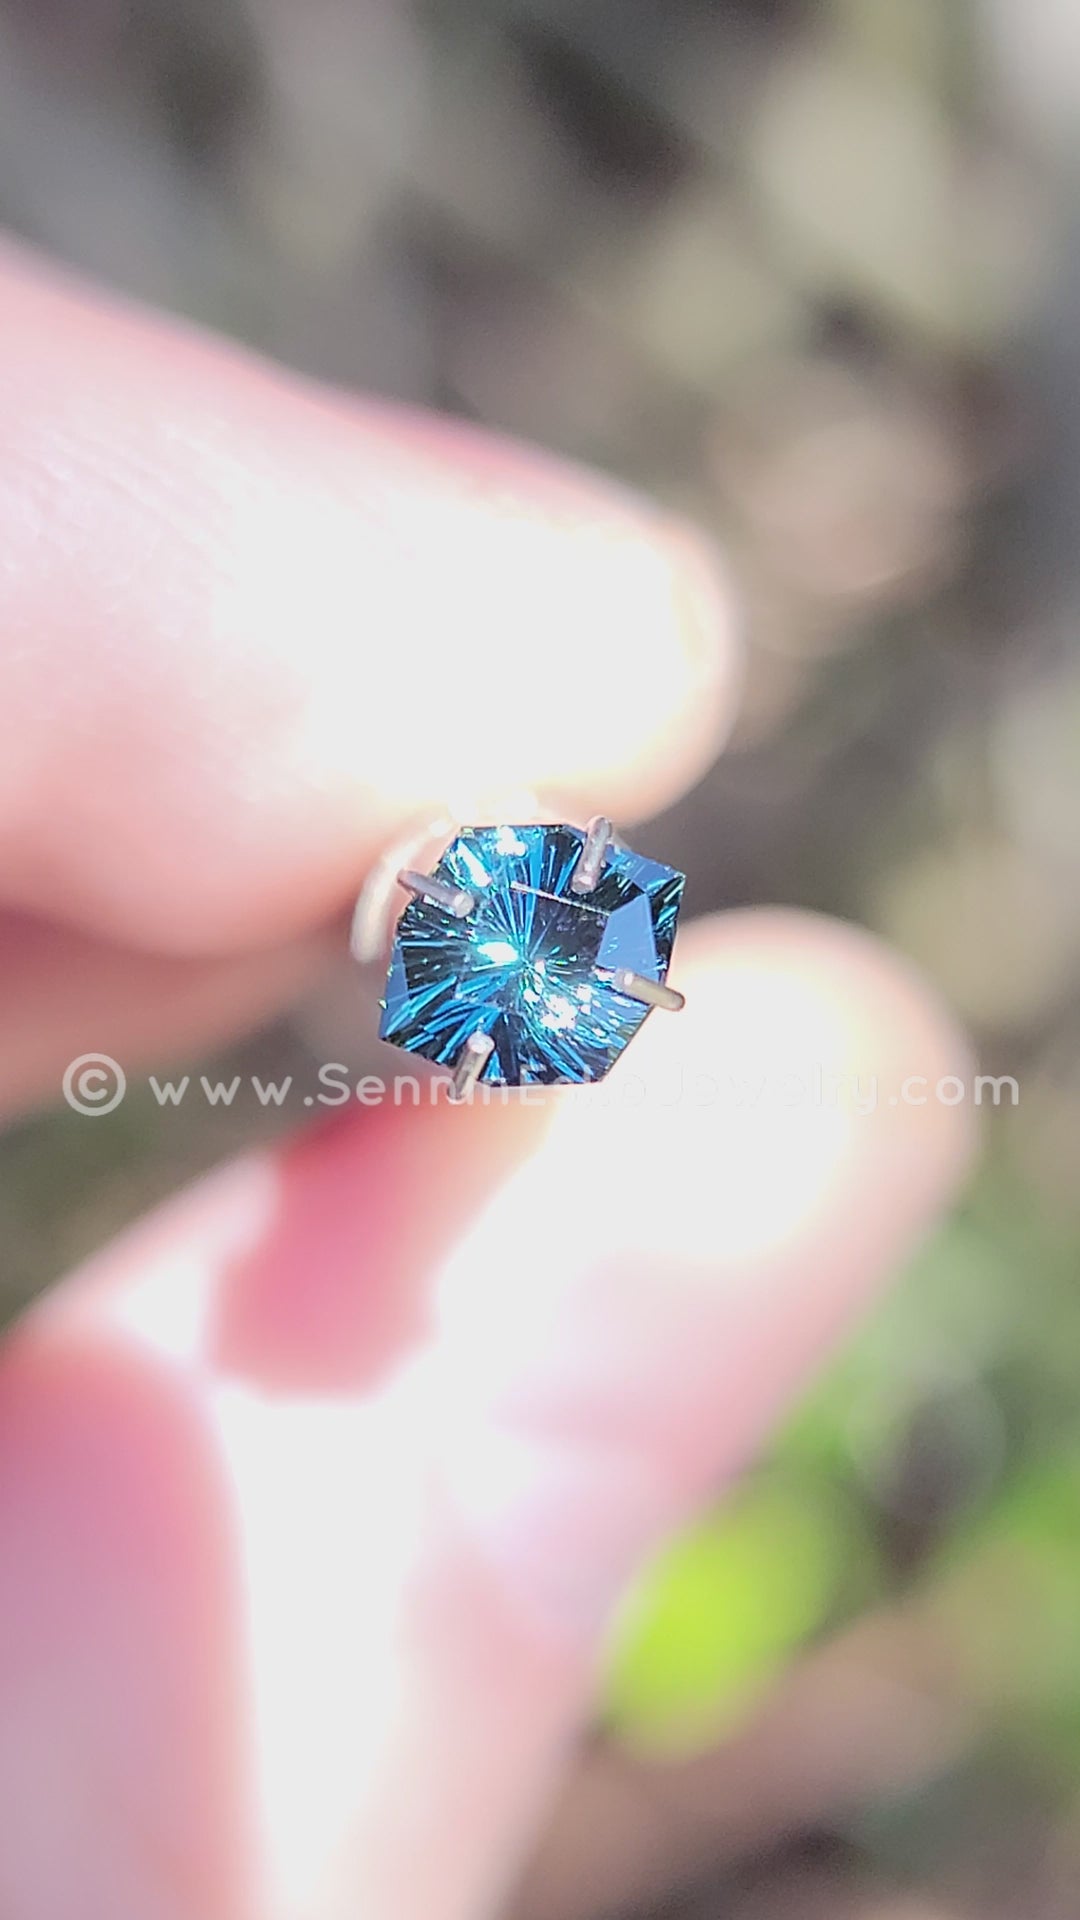 0.94 Carat Deep Blue/Green Sapphire Octagonal Shield - 7x5.9mm - Galaxy Cut